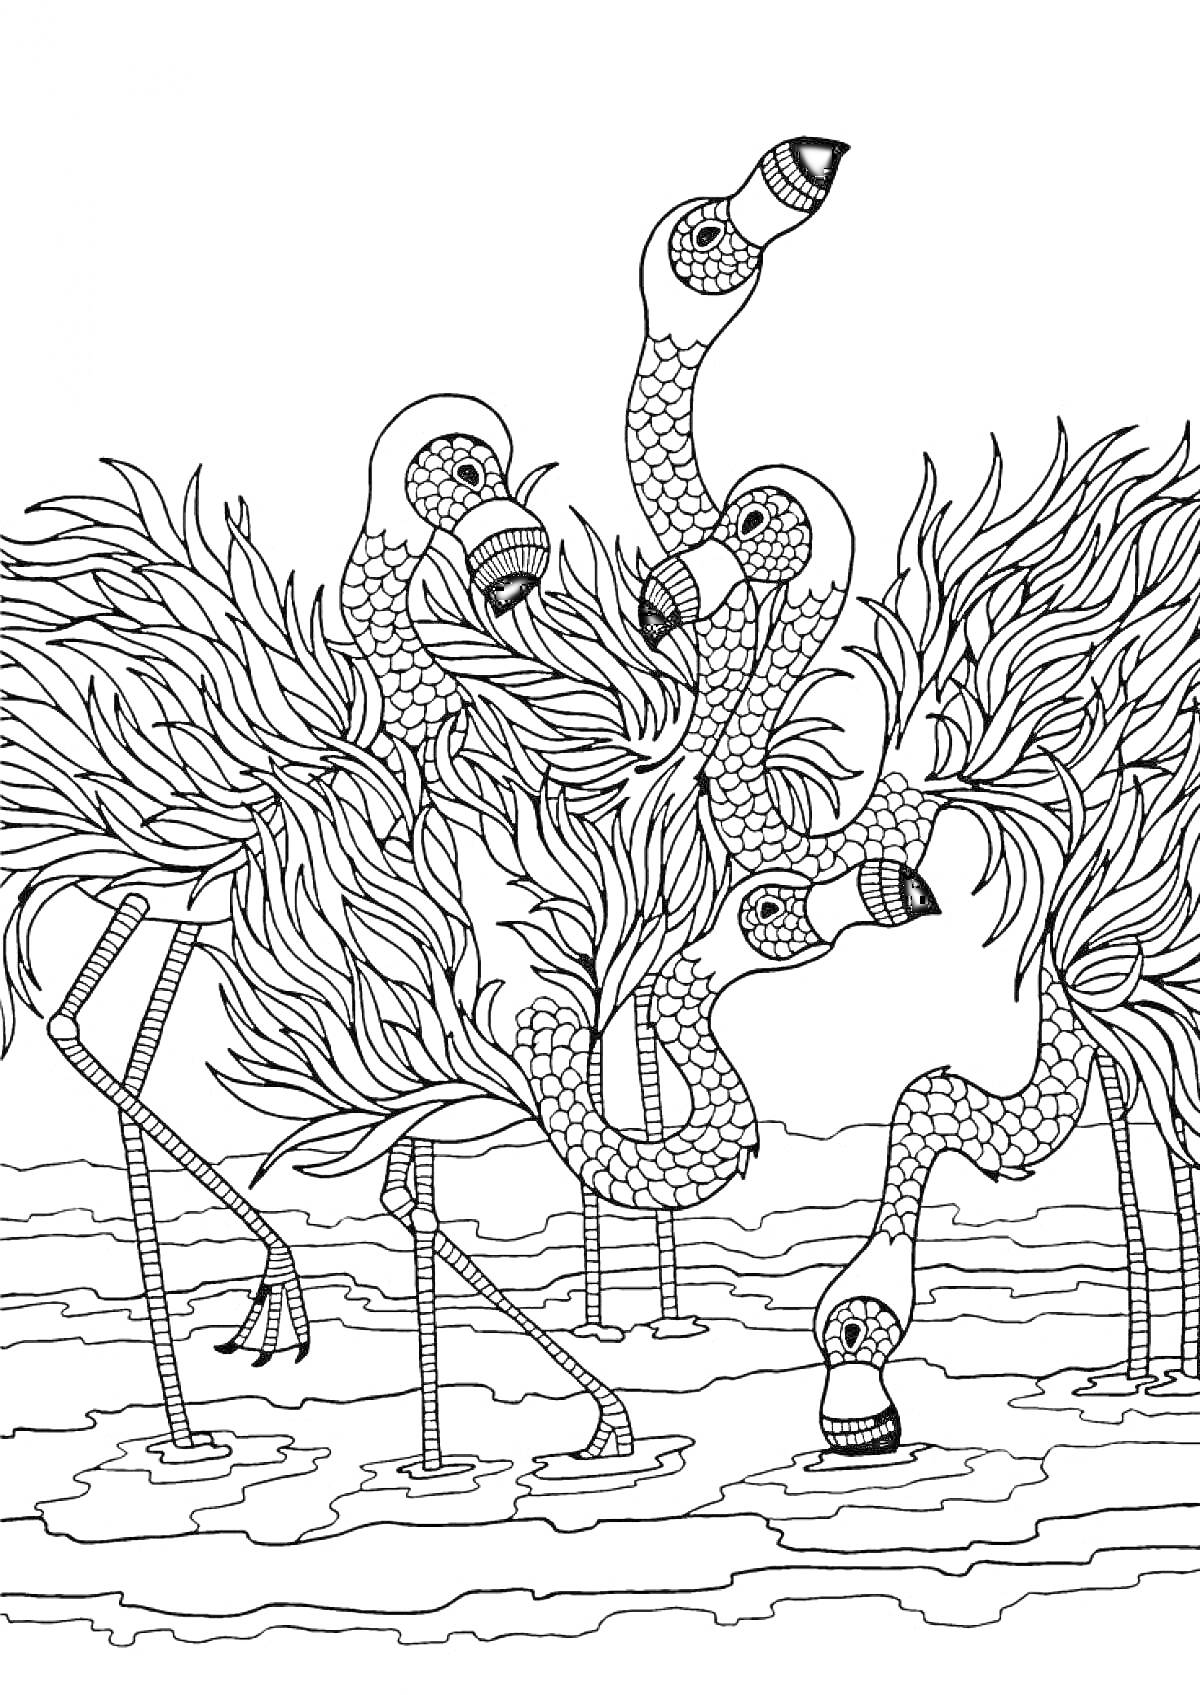 Раскраска Фламинго с узорчатыми телами и перьями в водоеме